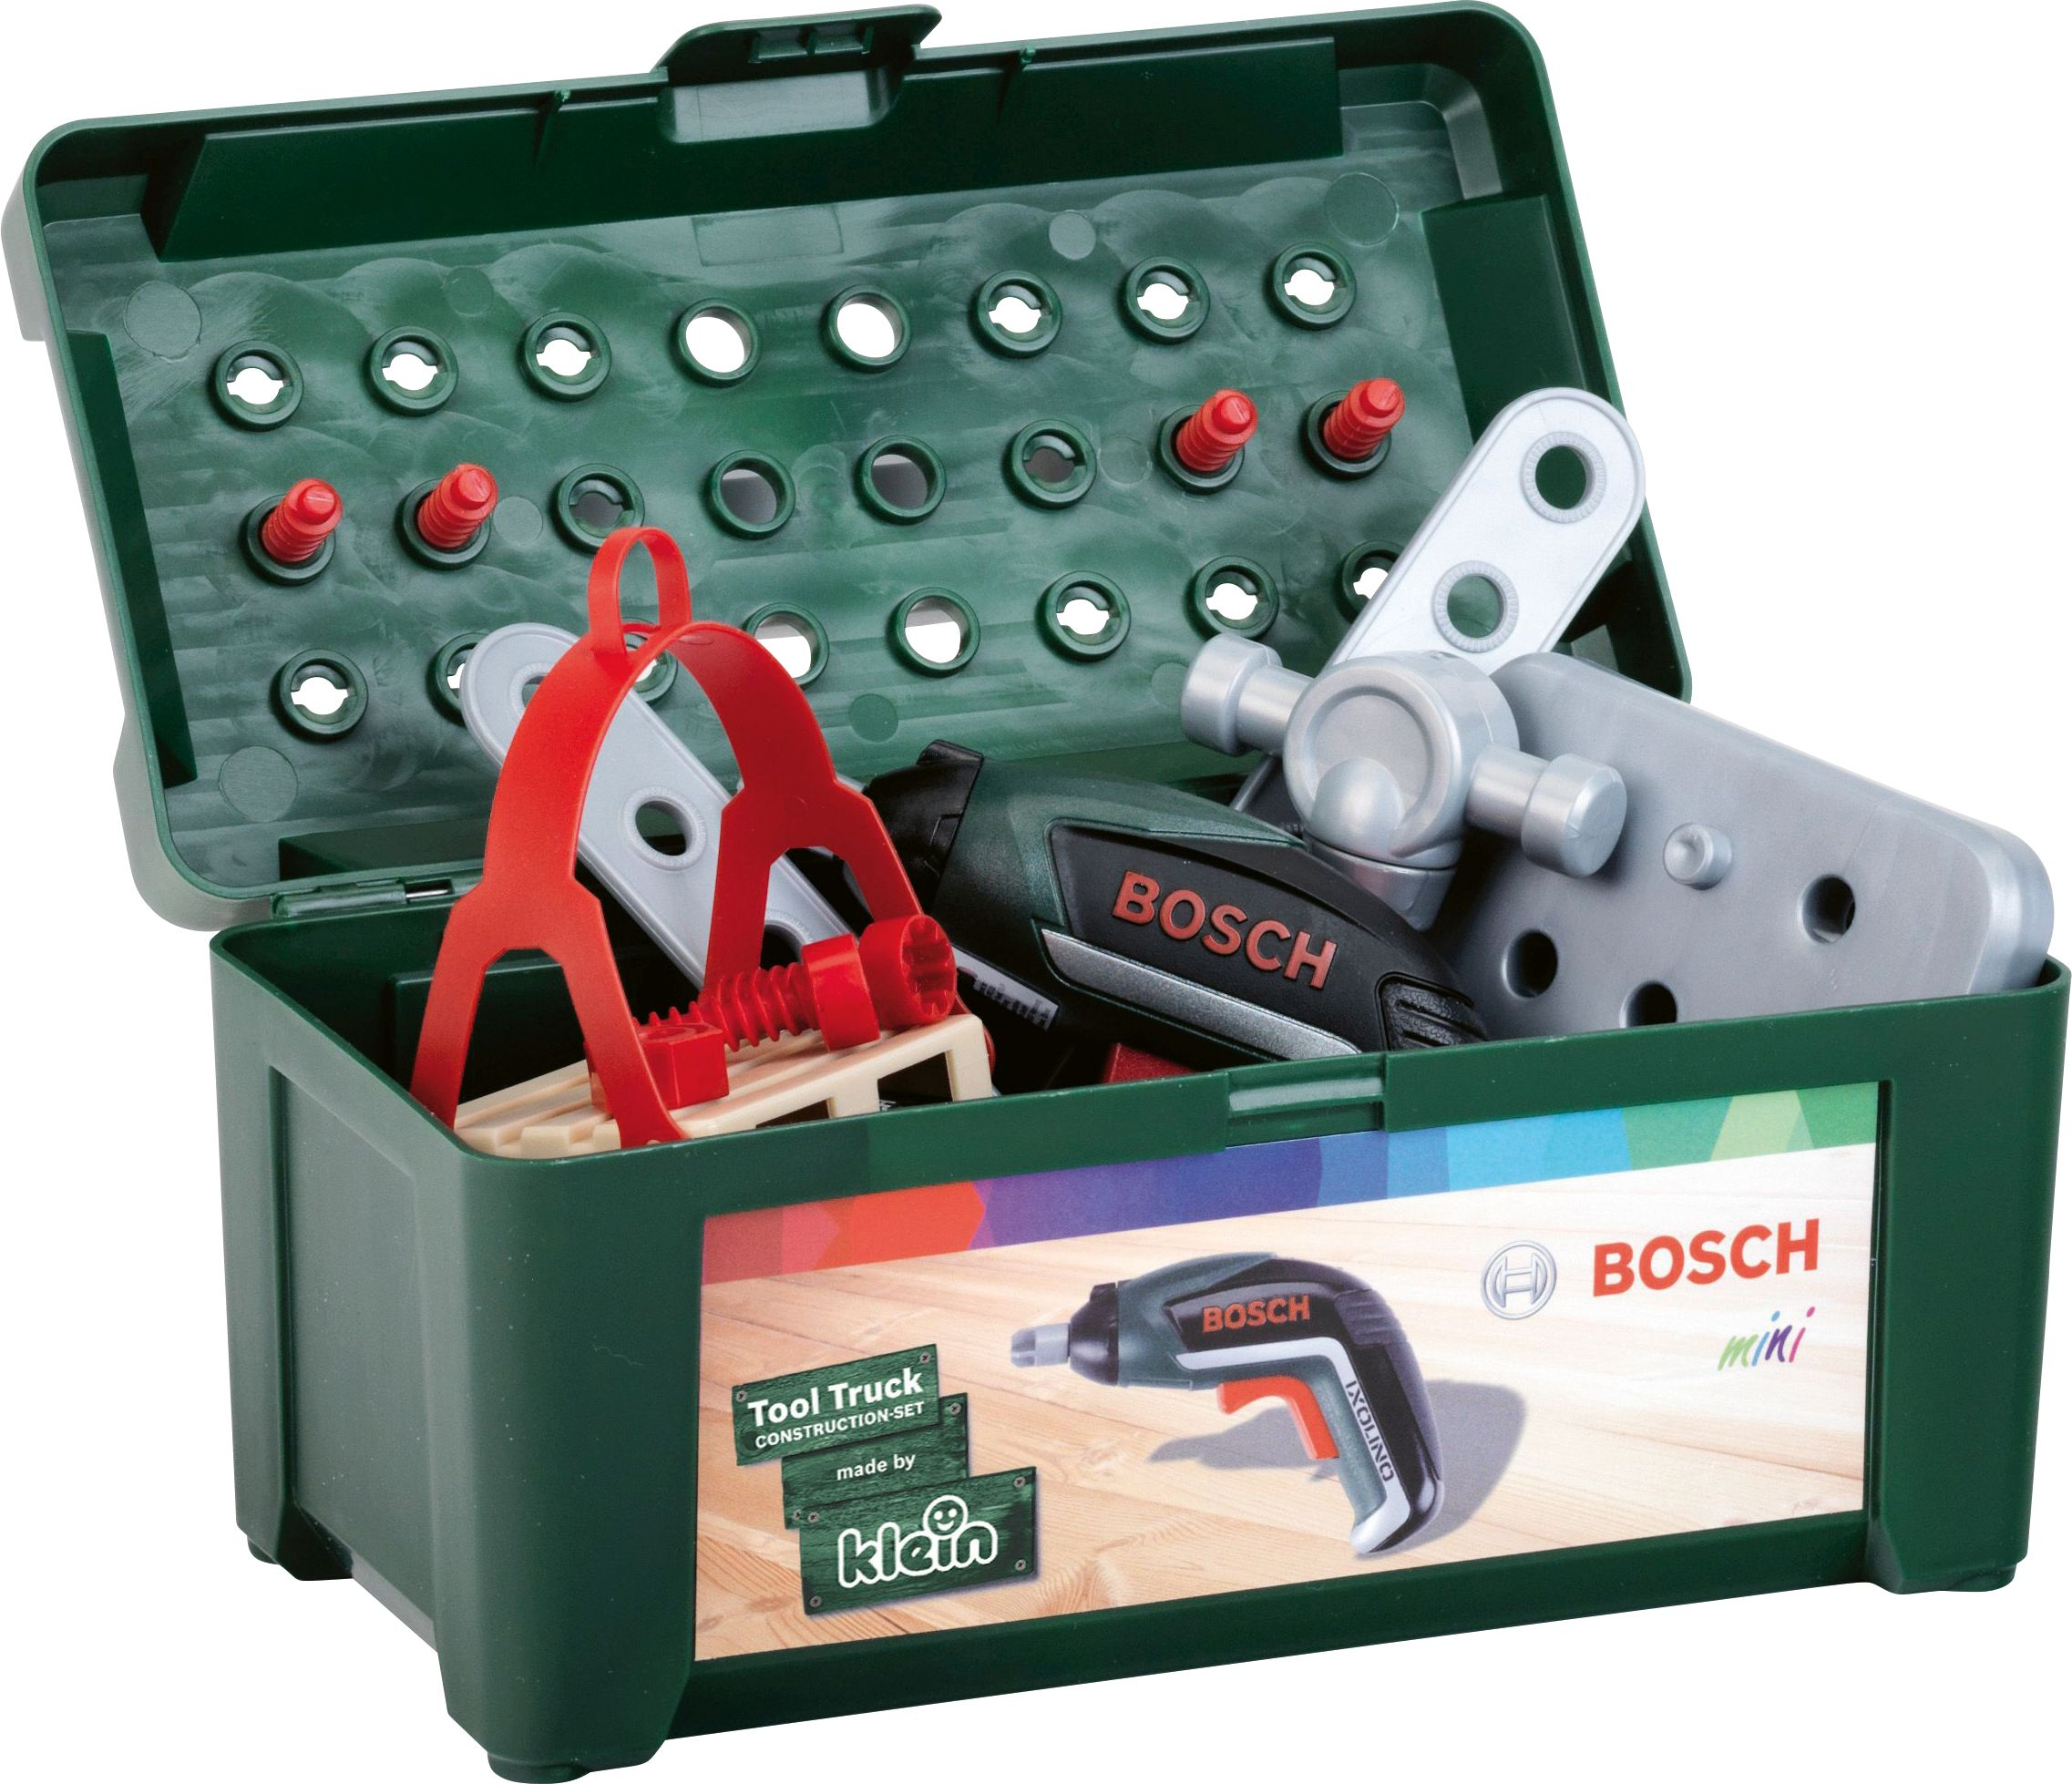 BOSCH Bosch Schraubtruck Set + Mehrfarbig Ixolino Rollenspielzeug